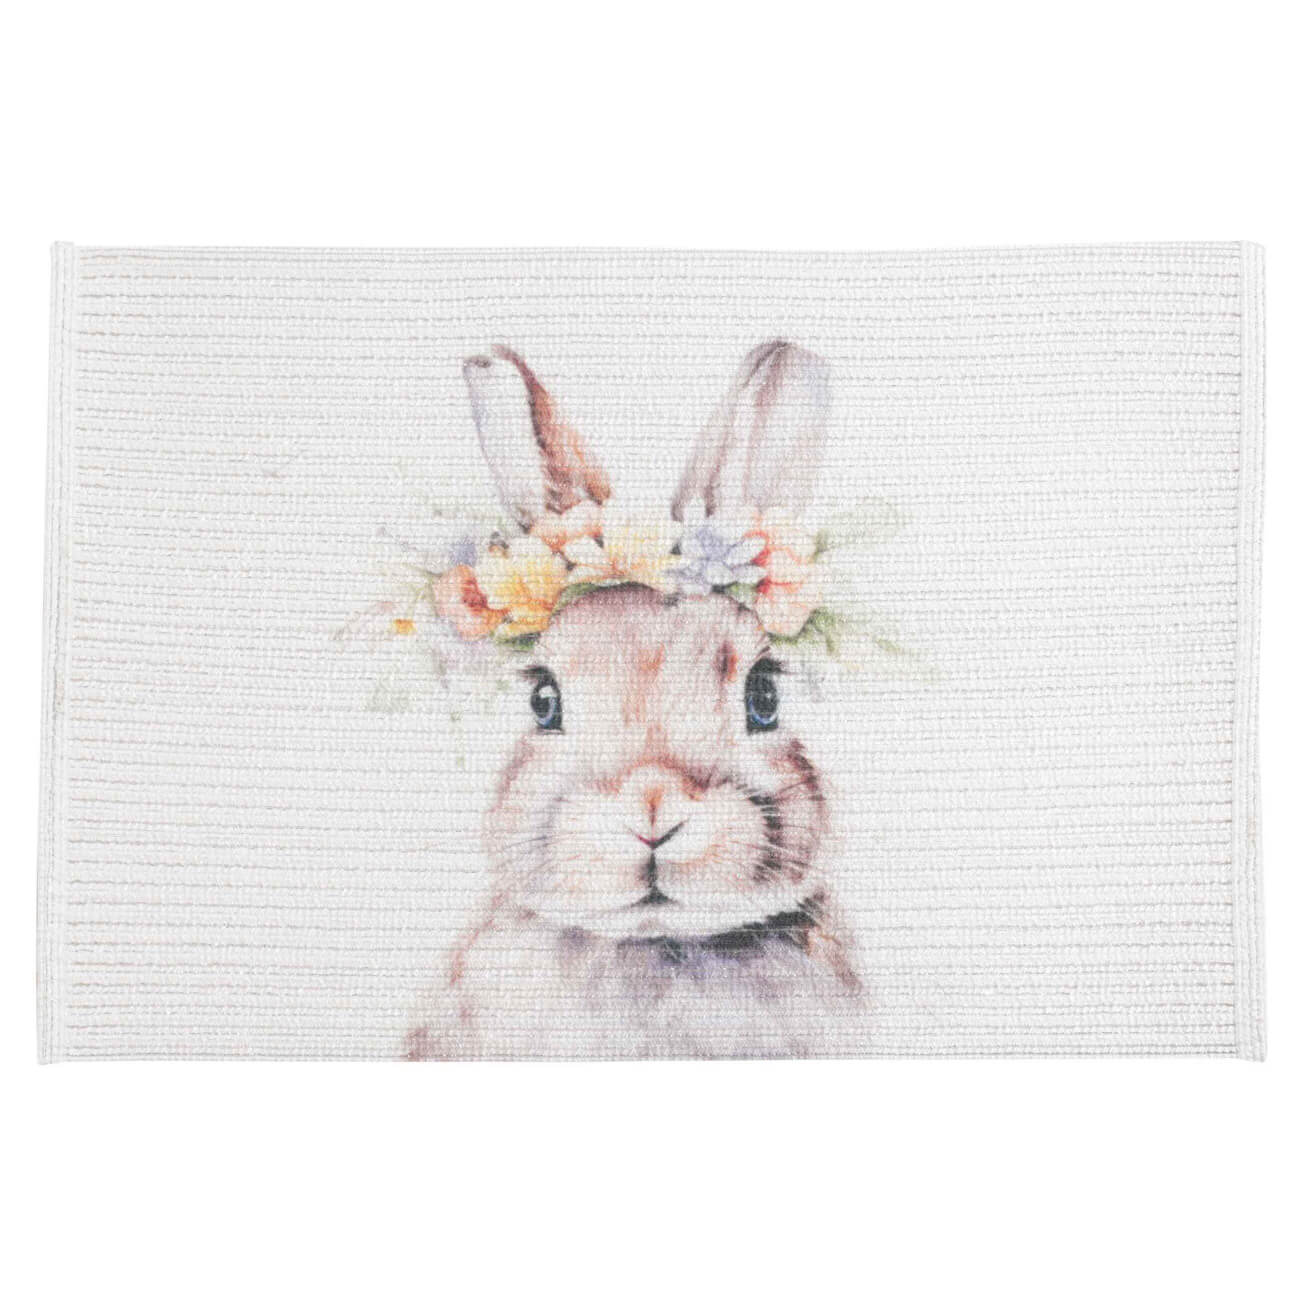 Салфетка под приборы, 30х45 см, полиэстер, прямоугольная, белая, Кролик в венке, Rotary print изображение № 1